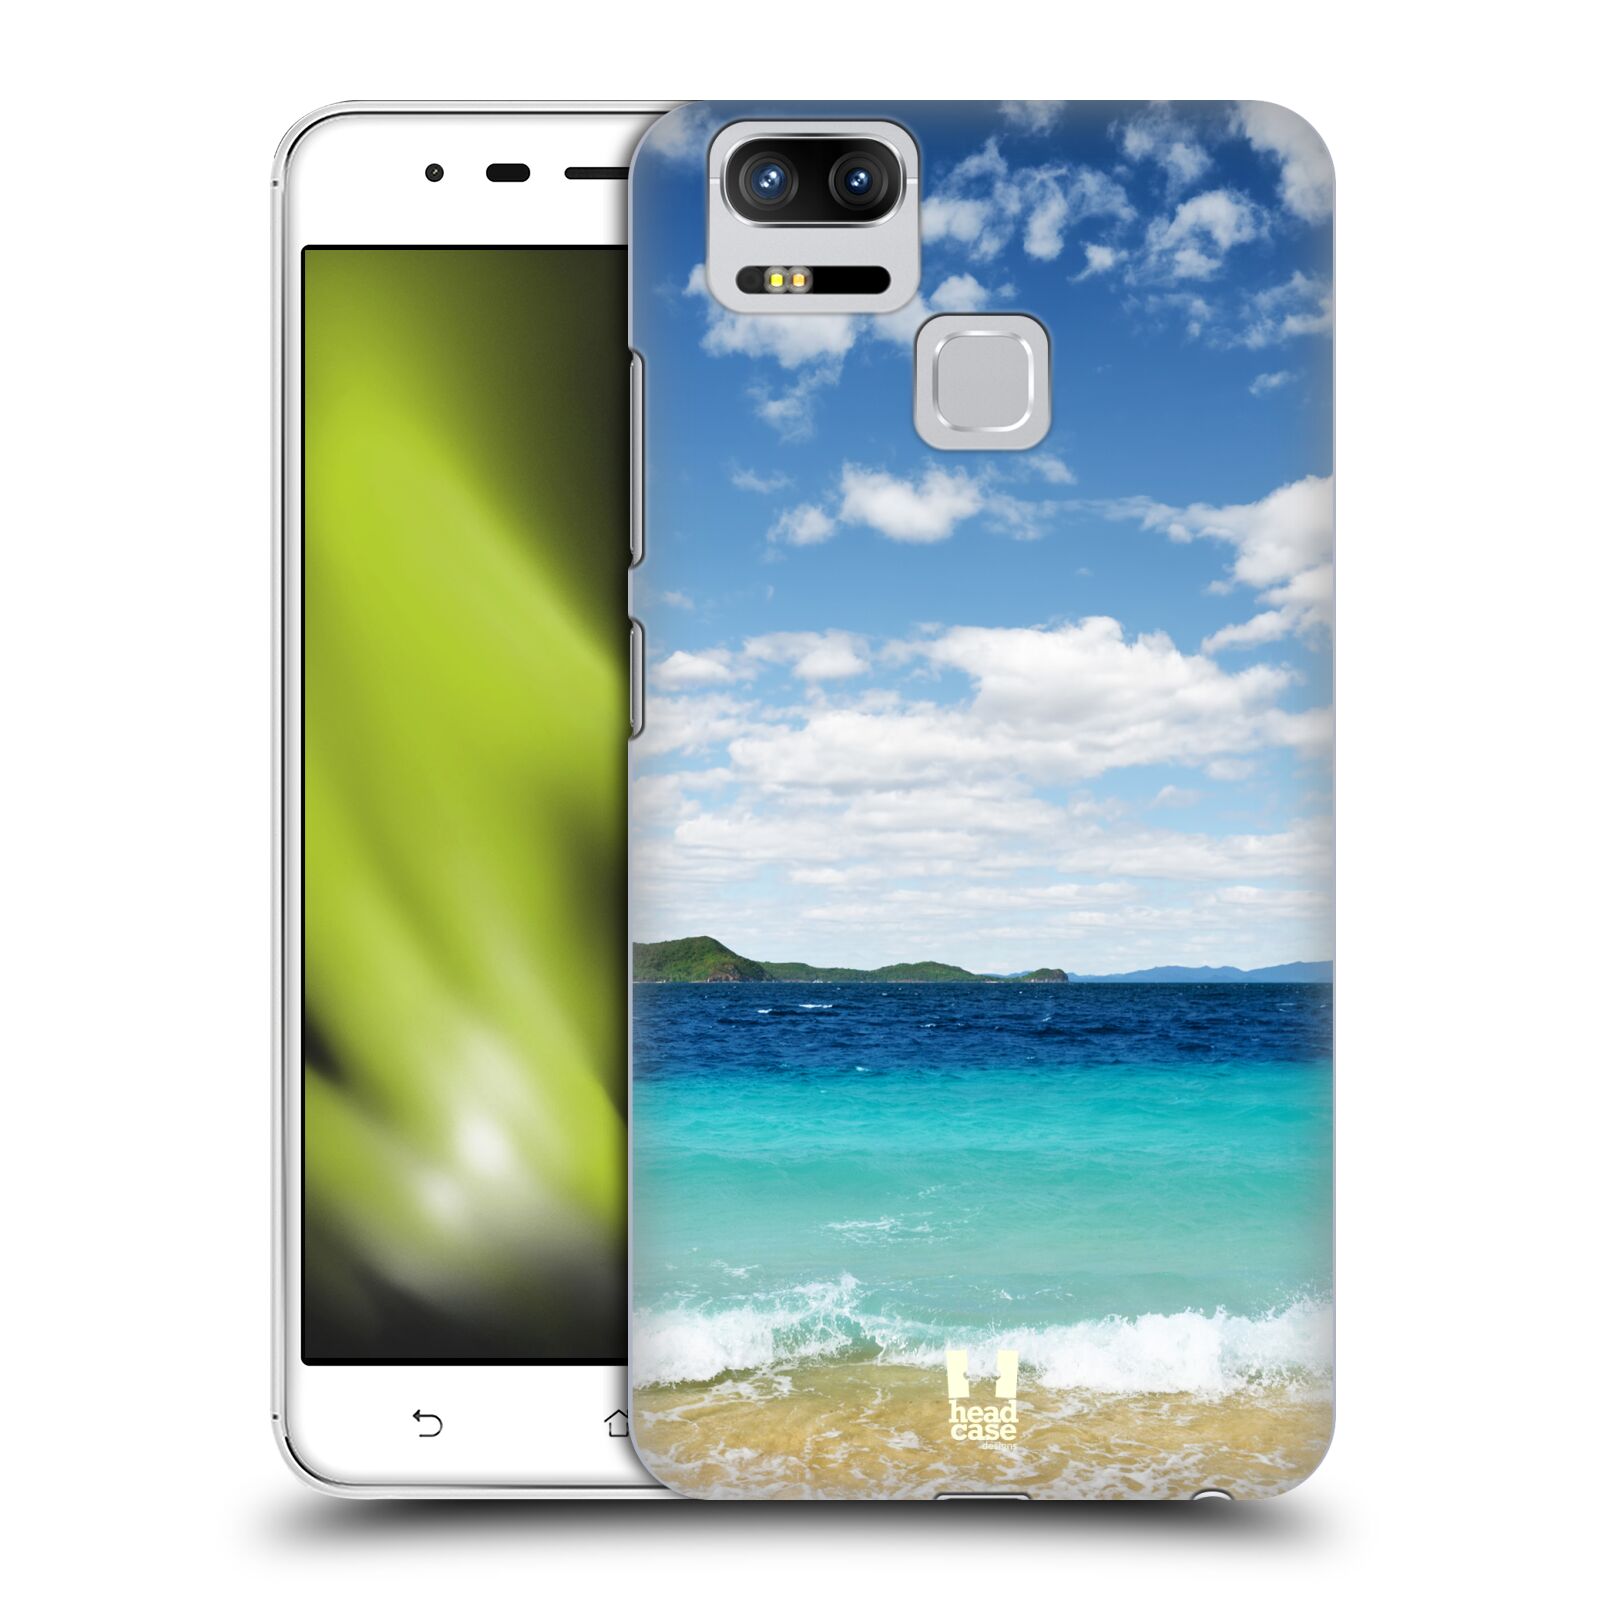 HEAD CASE plastový obal na mobil Asus Zenfone 3 Zoom ZE553KL vzor Pláže a Moře VZDÁLENÝ OSTROV